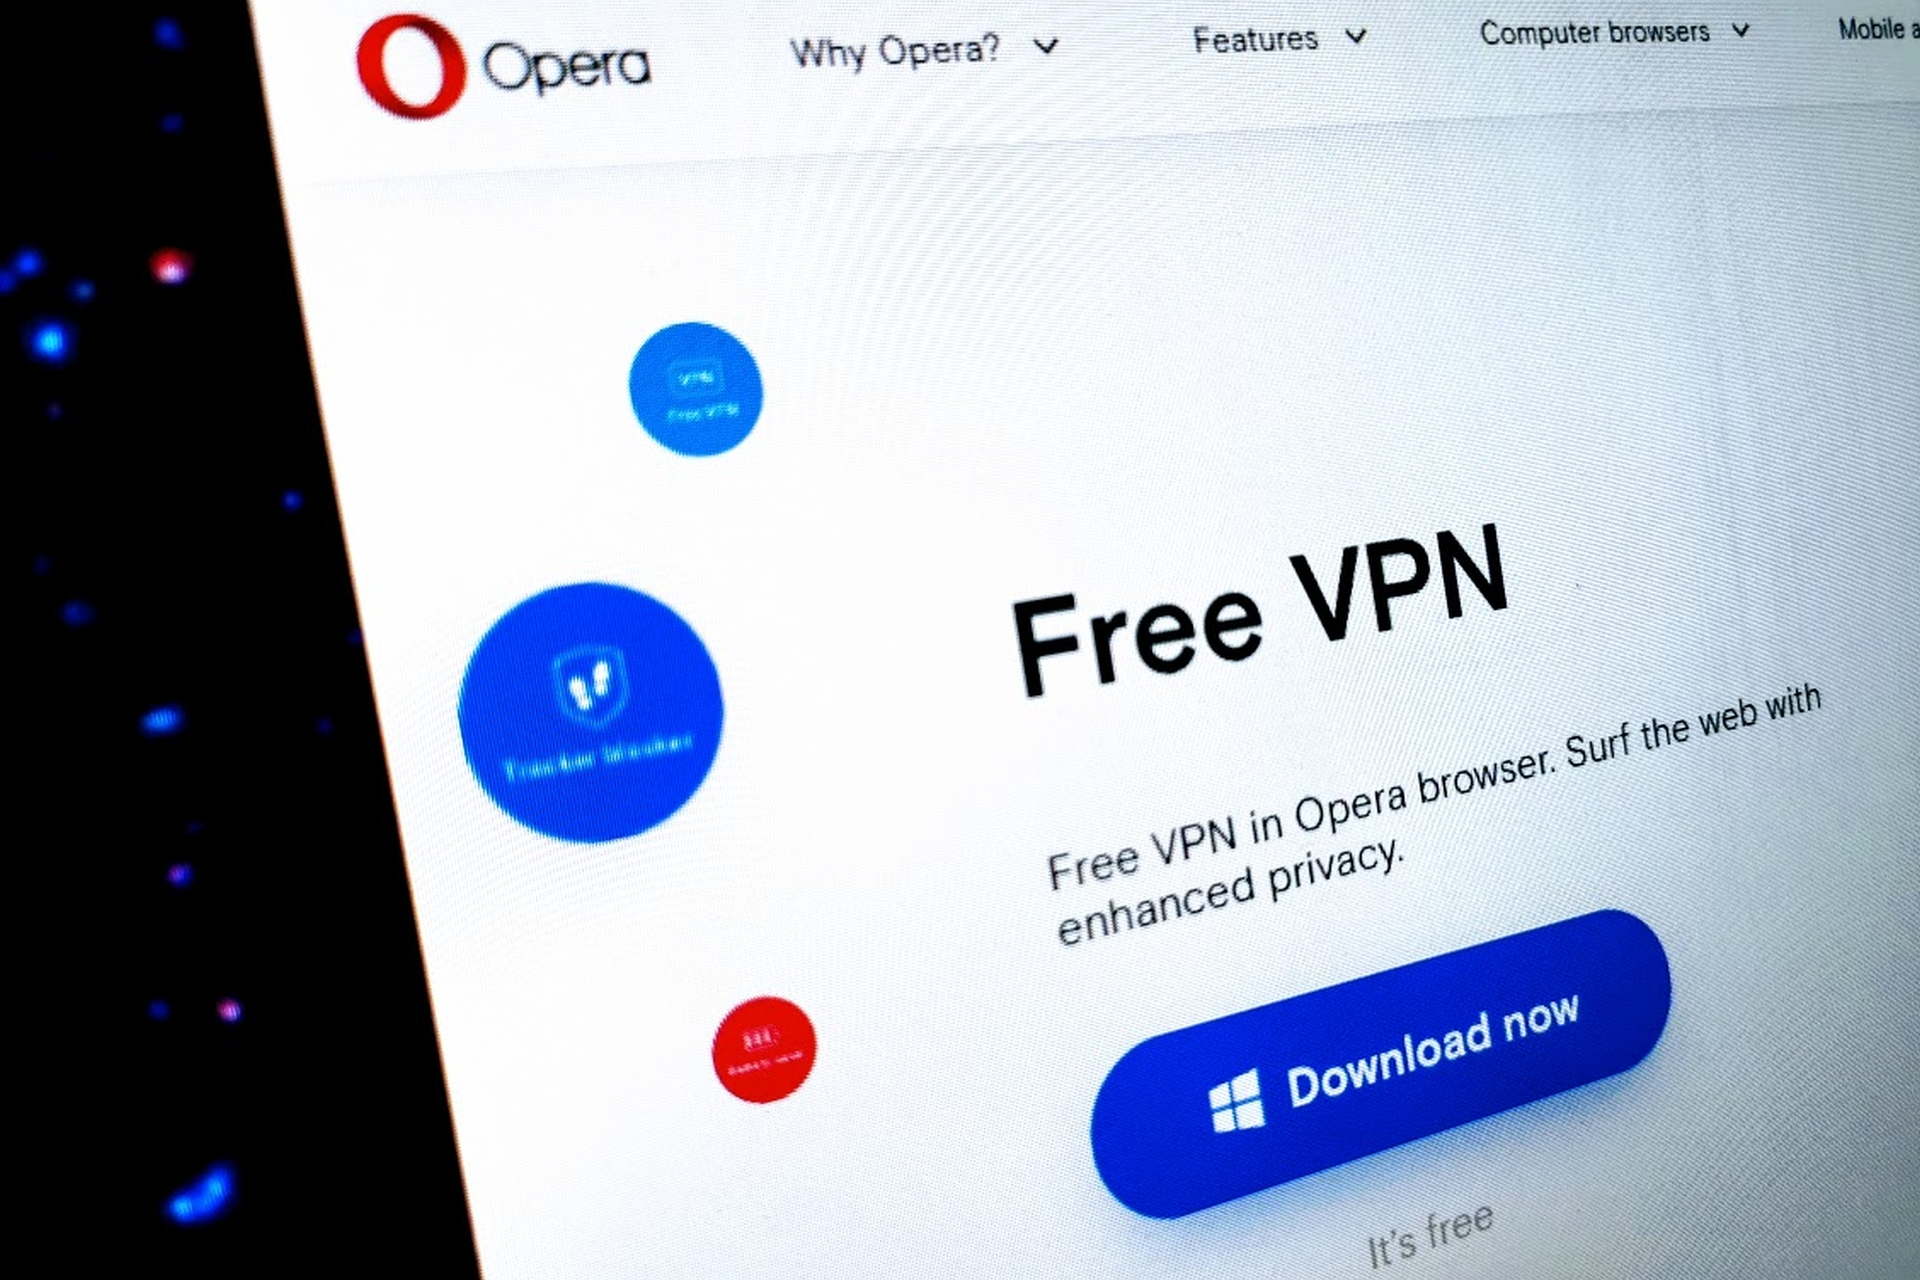 Can't find Opera VPN?